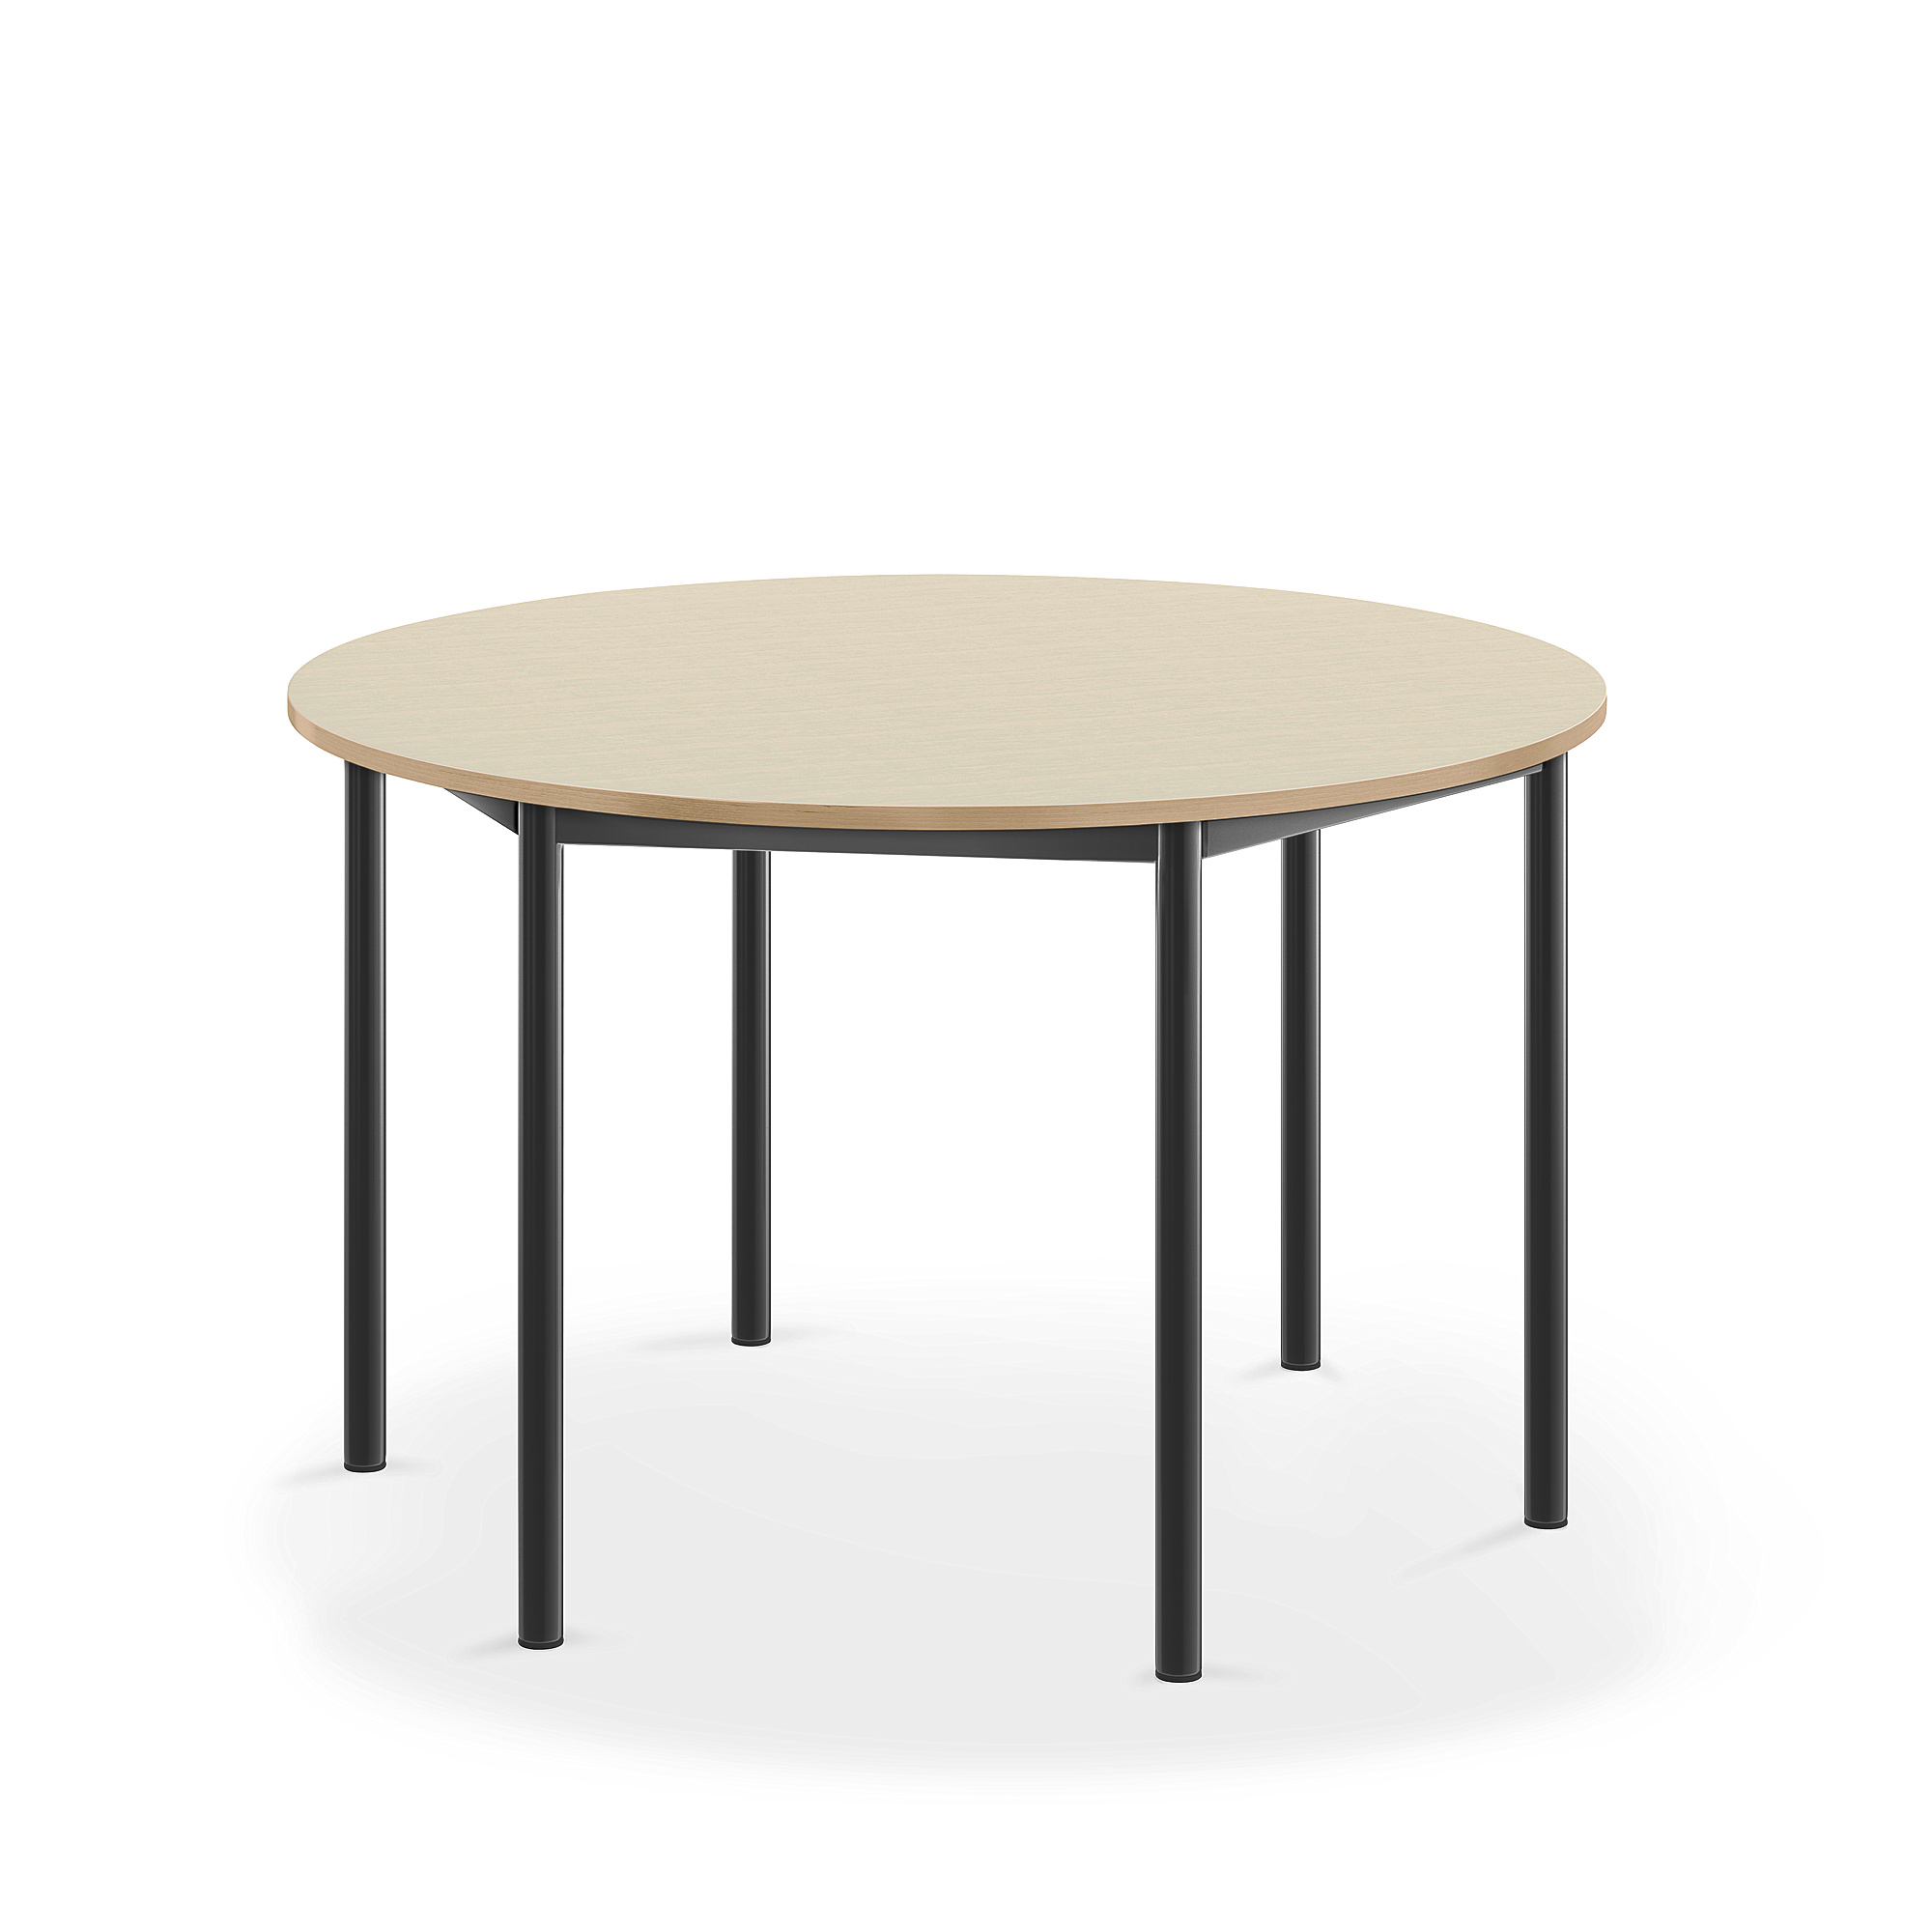 Stůl SONITUS, Ø1200x720 mm, antracitově šedé nohy, HPL deska tlumící hluk, bříza